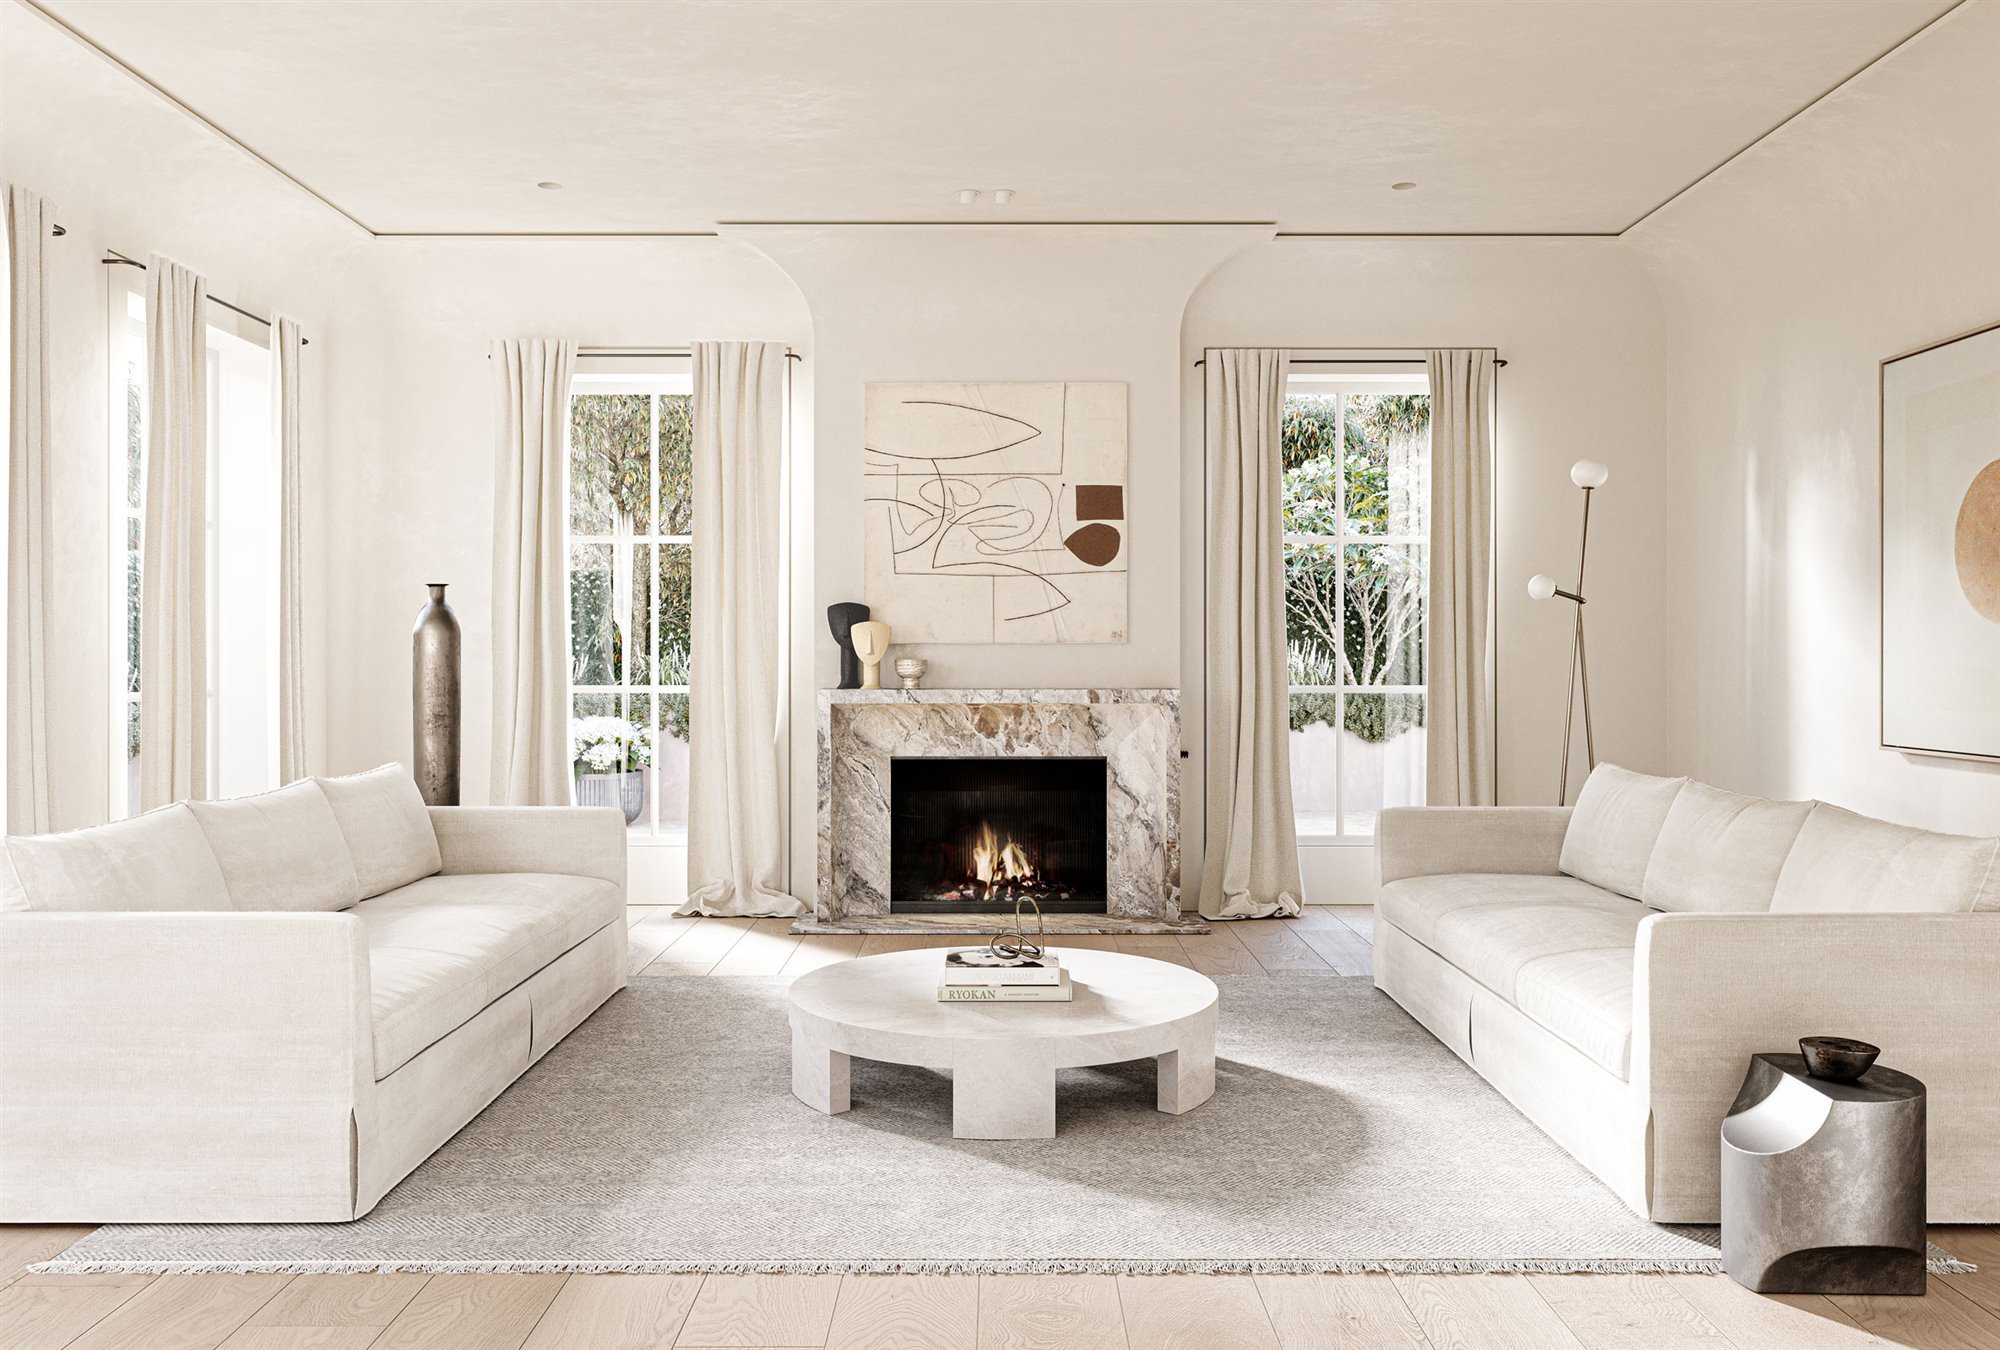 Preceder Moda Preciso Una moderna casa en Los Angeles con interiores blancos y elegantes